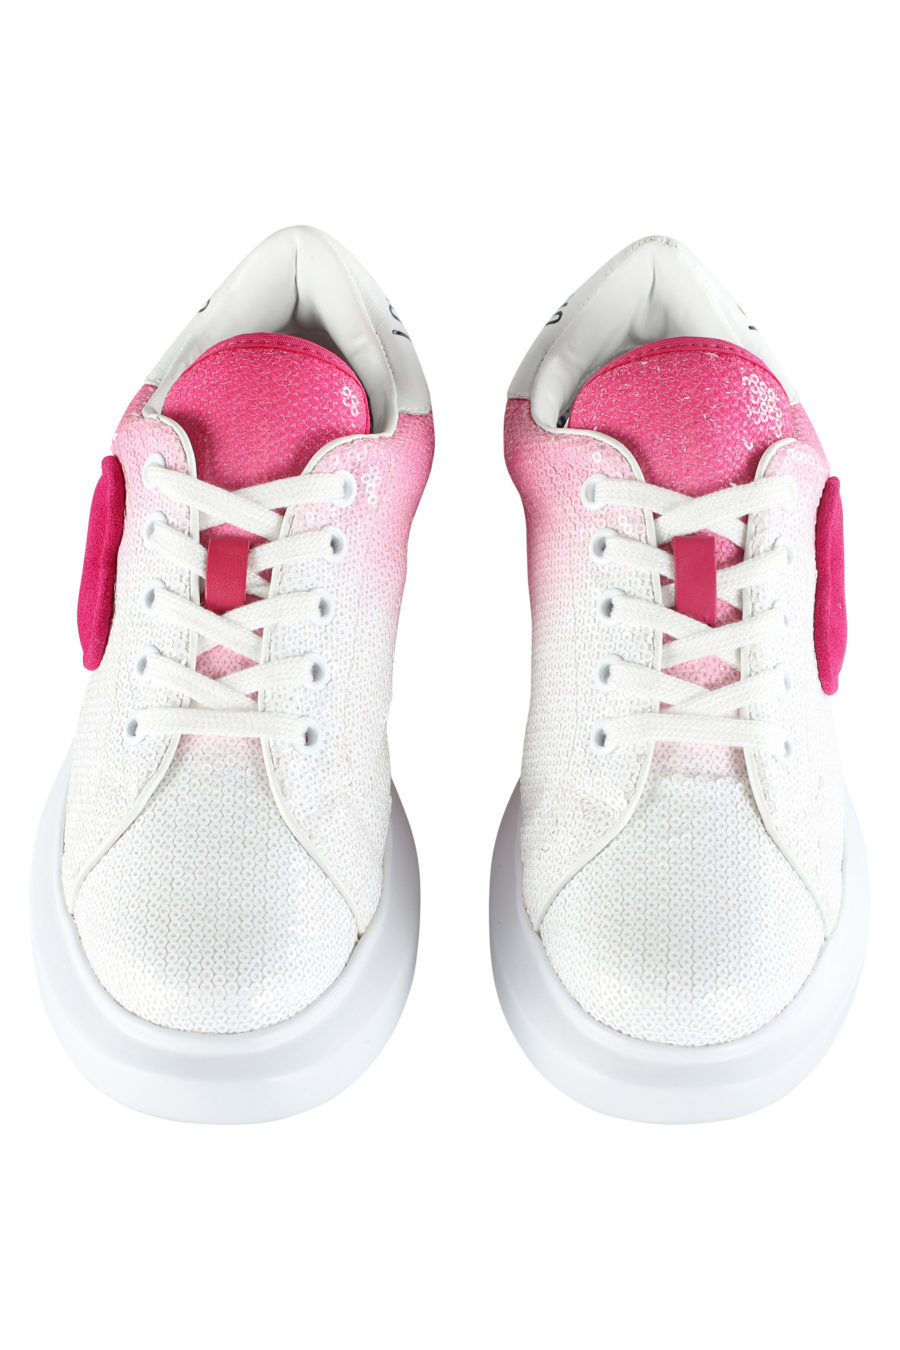 Sapatilhas brancas com gradiente rosa e lantejoulas - IMG 5349